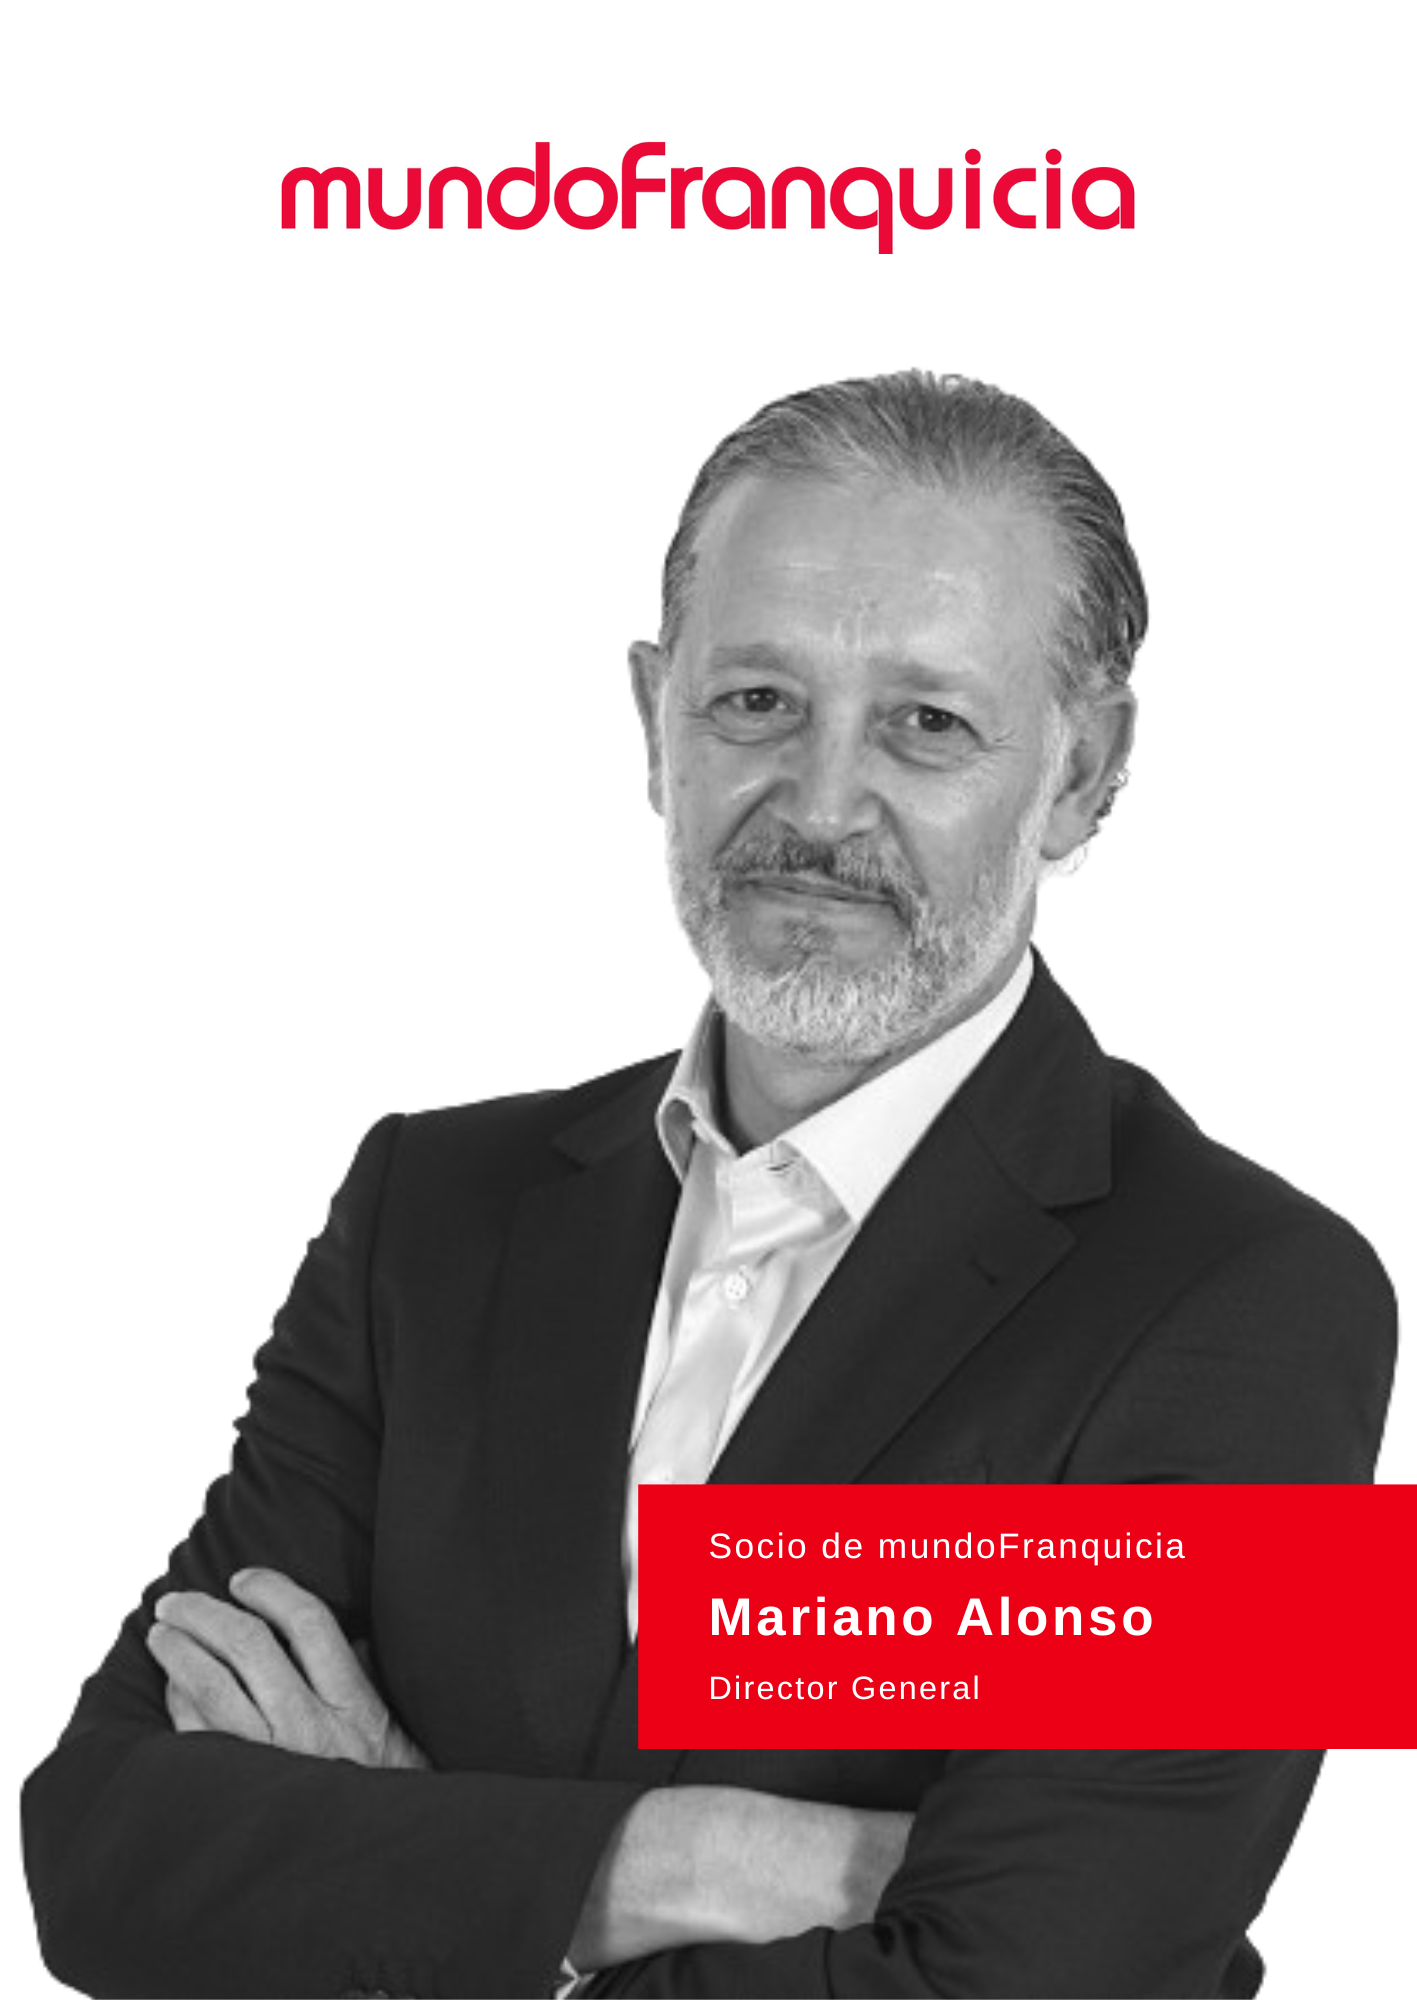 Mariano Alonso